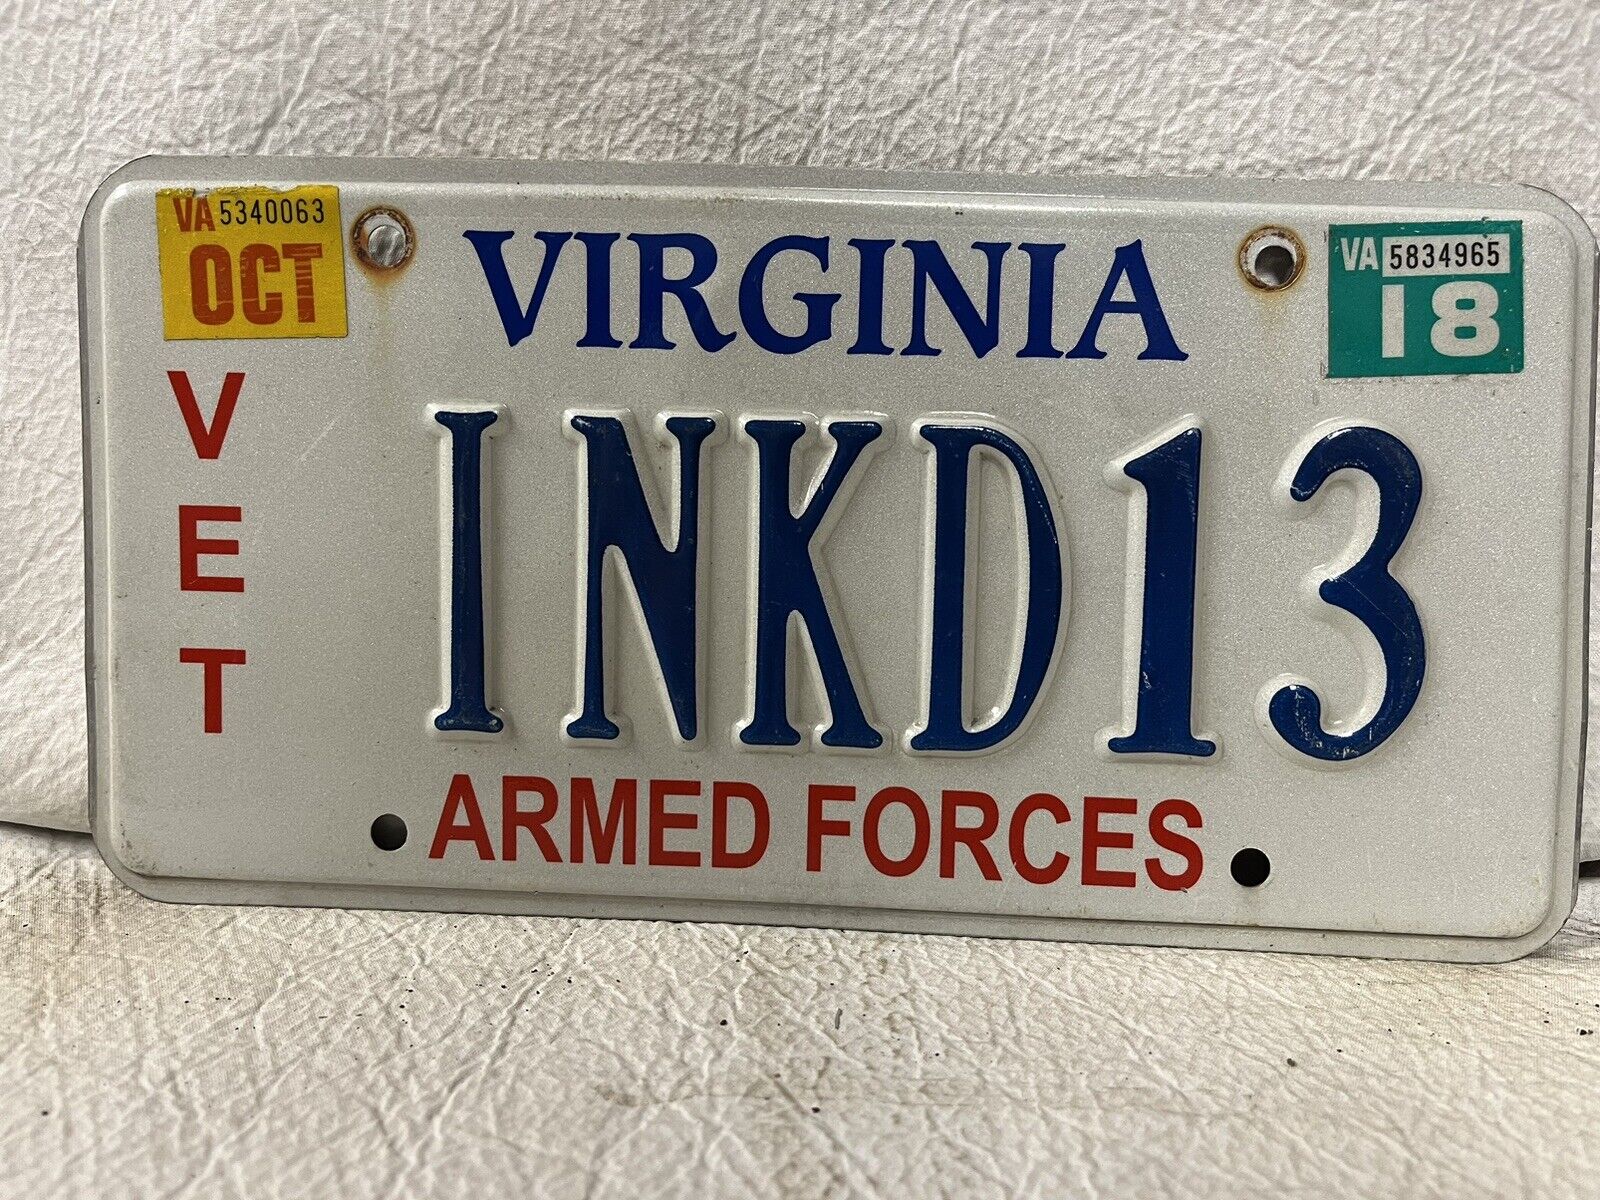 2018 Virginia Vanity Armed Forces License Plate ~ INKD13